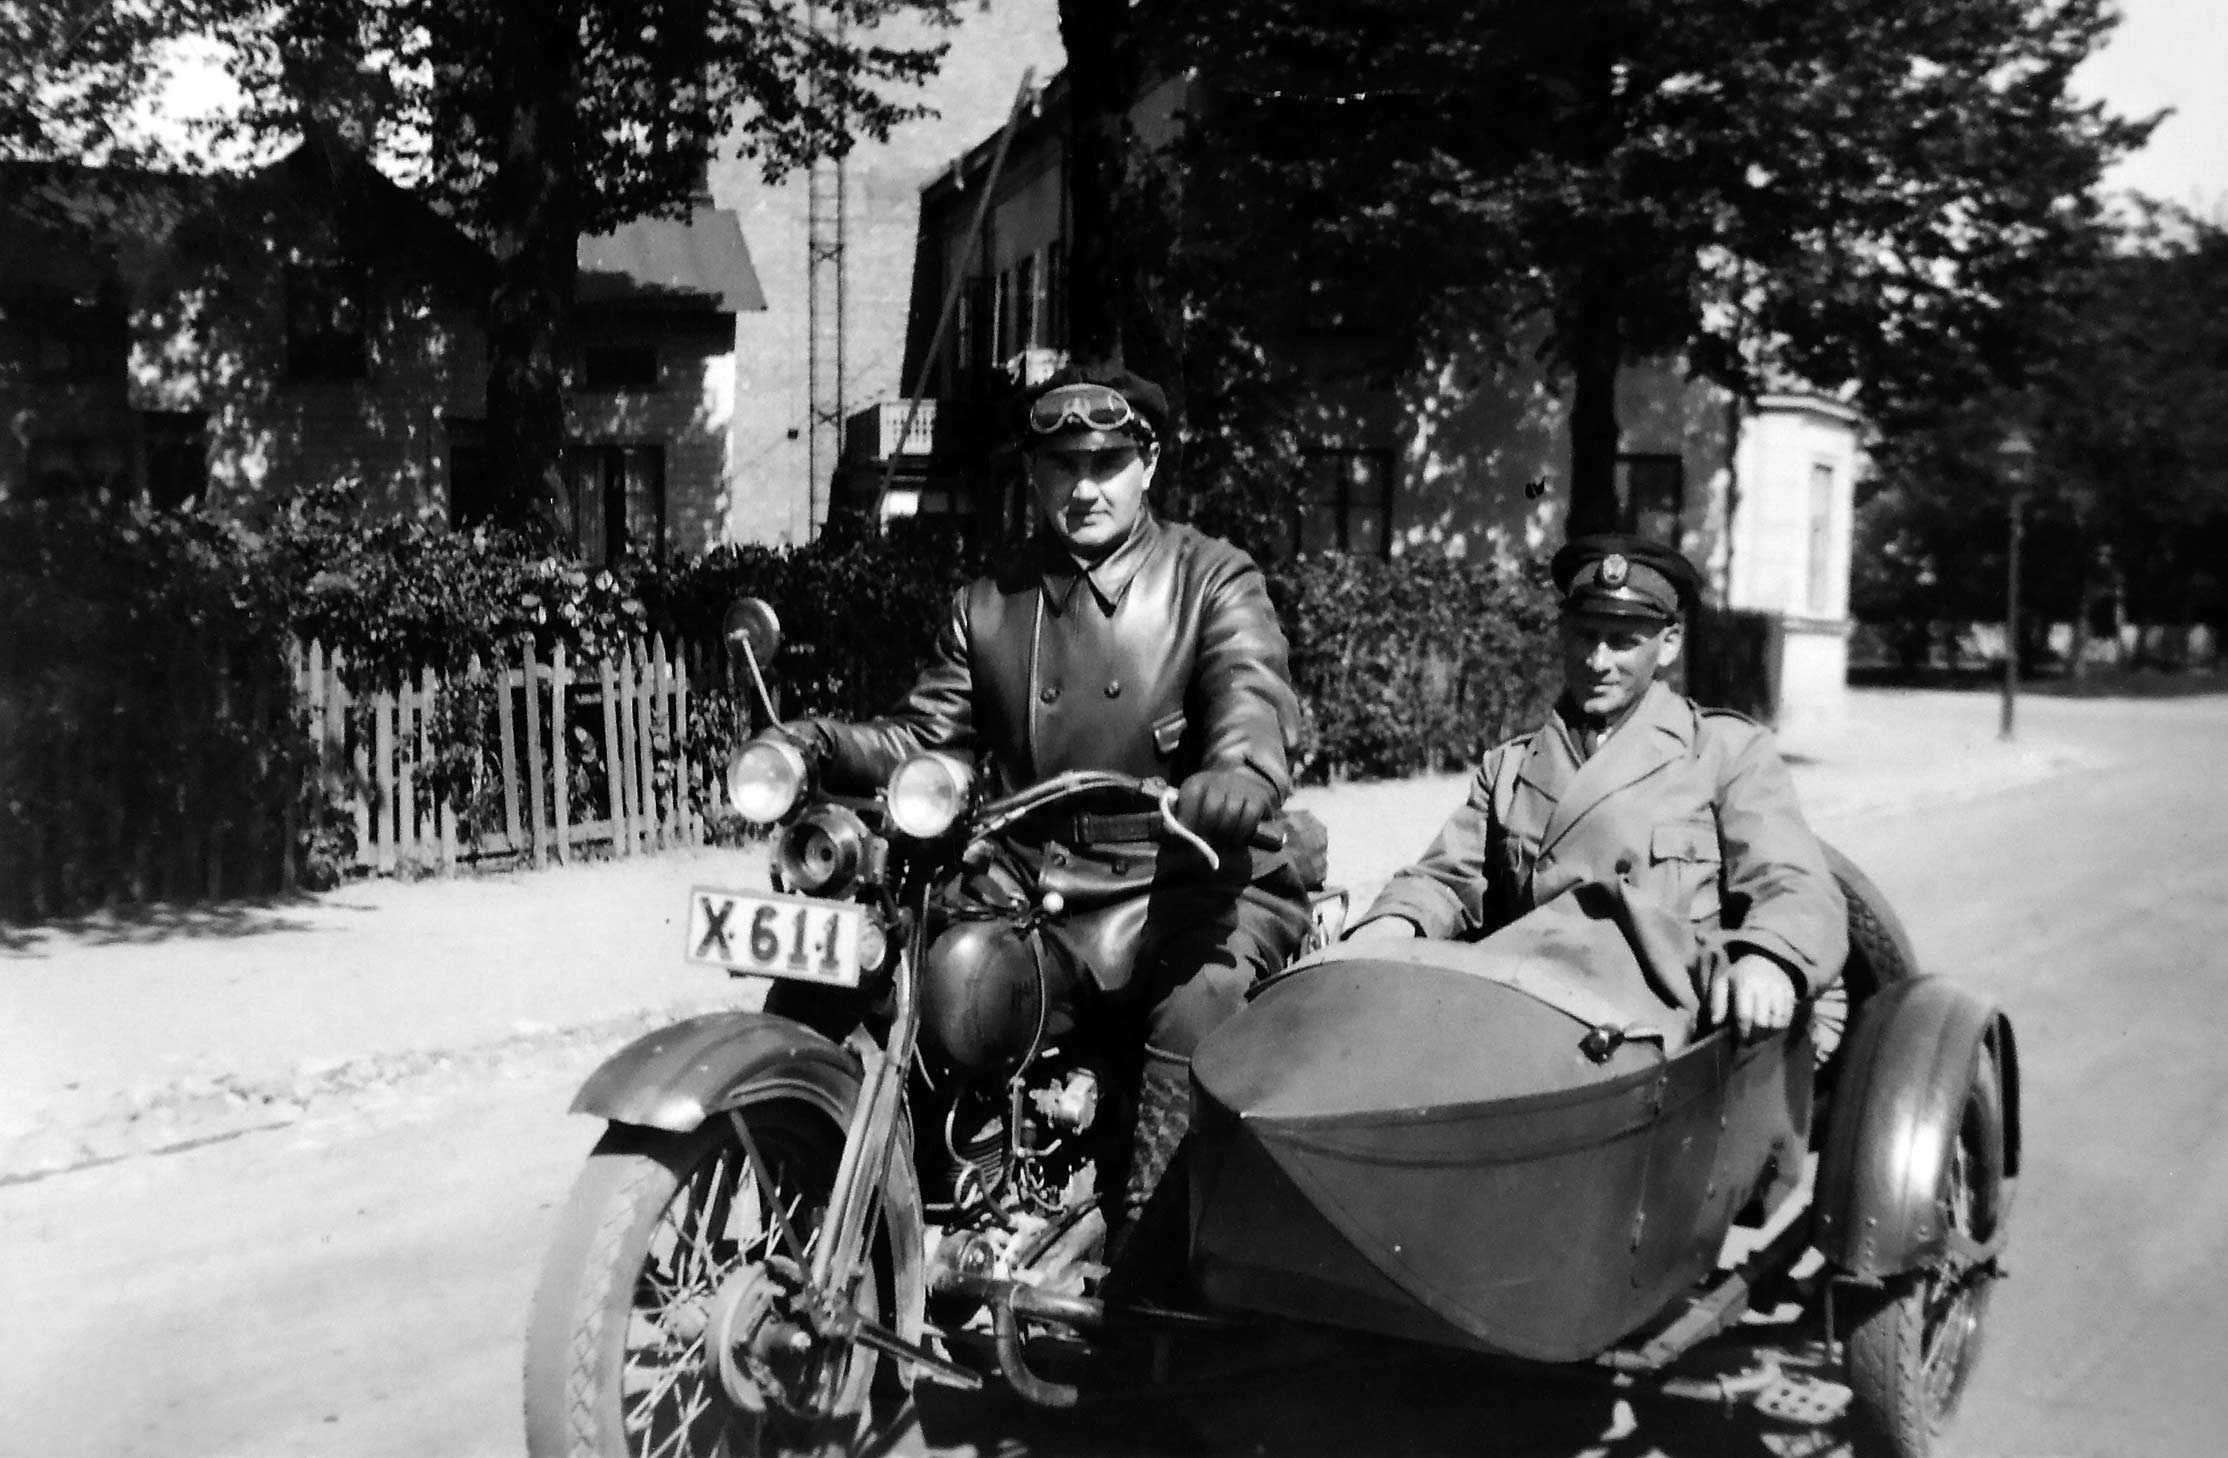 Carl Anton Cyrén i sin tjänstemotorcykel, en Harley Davidson